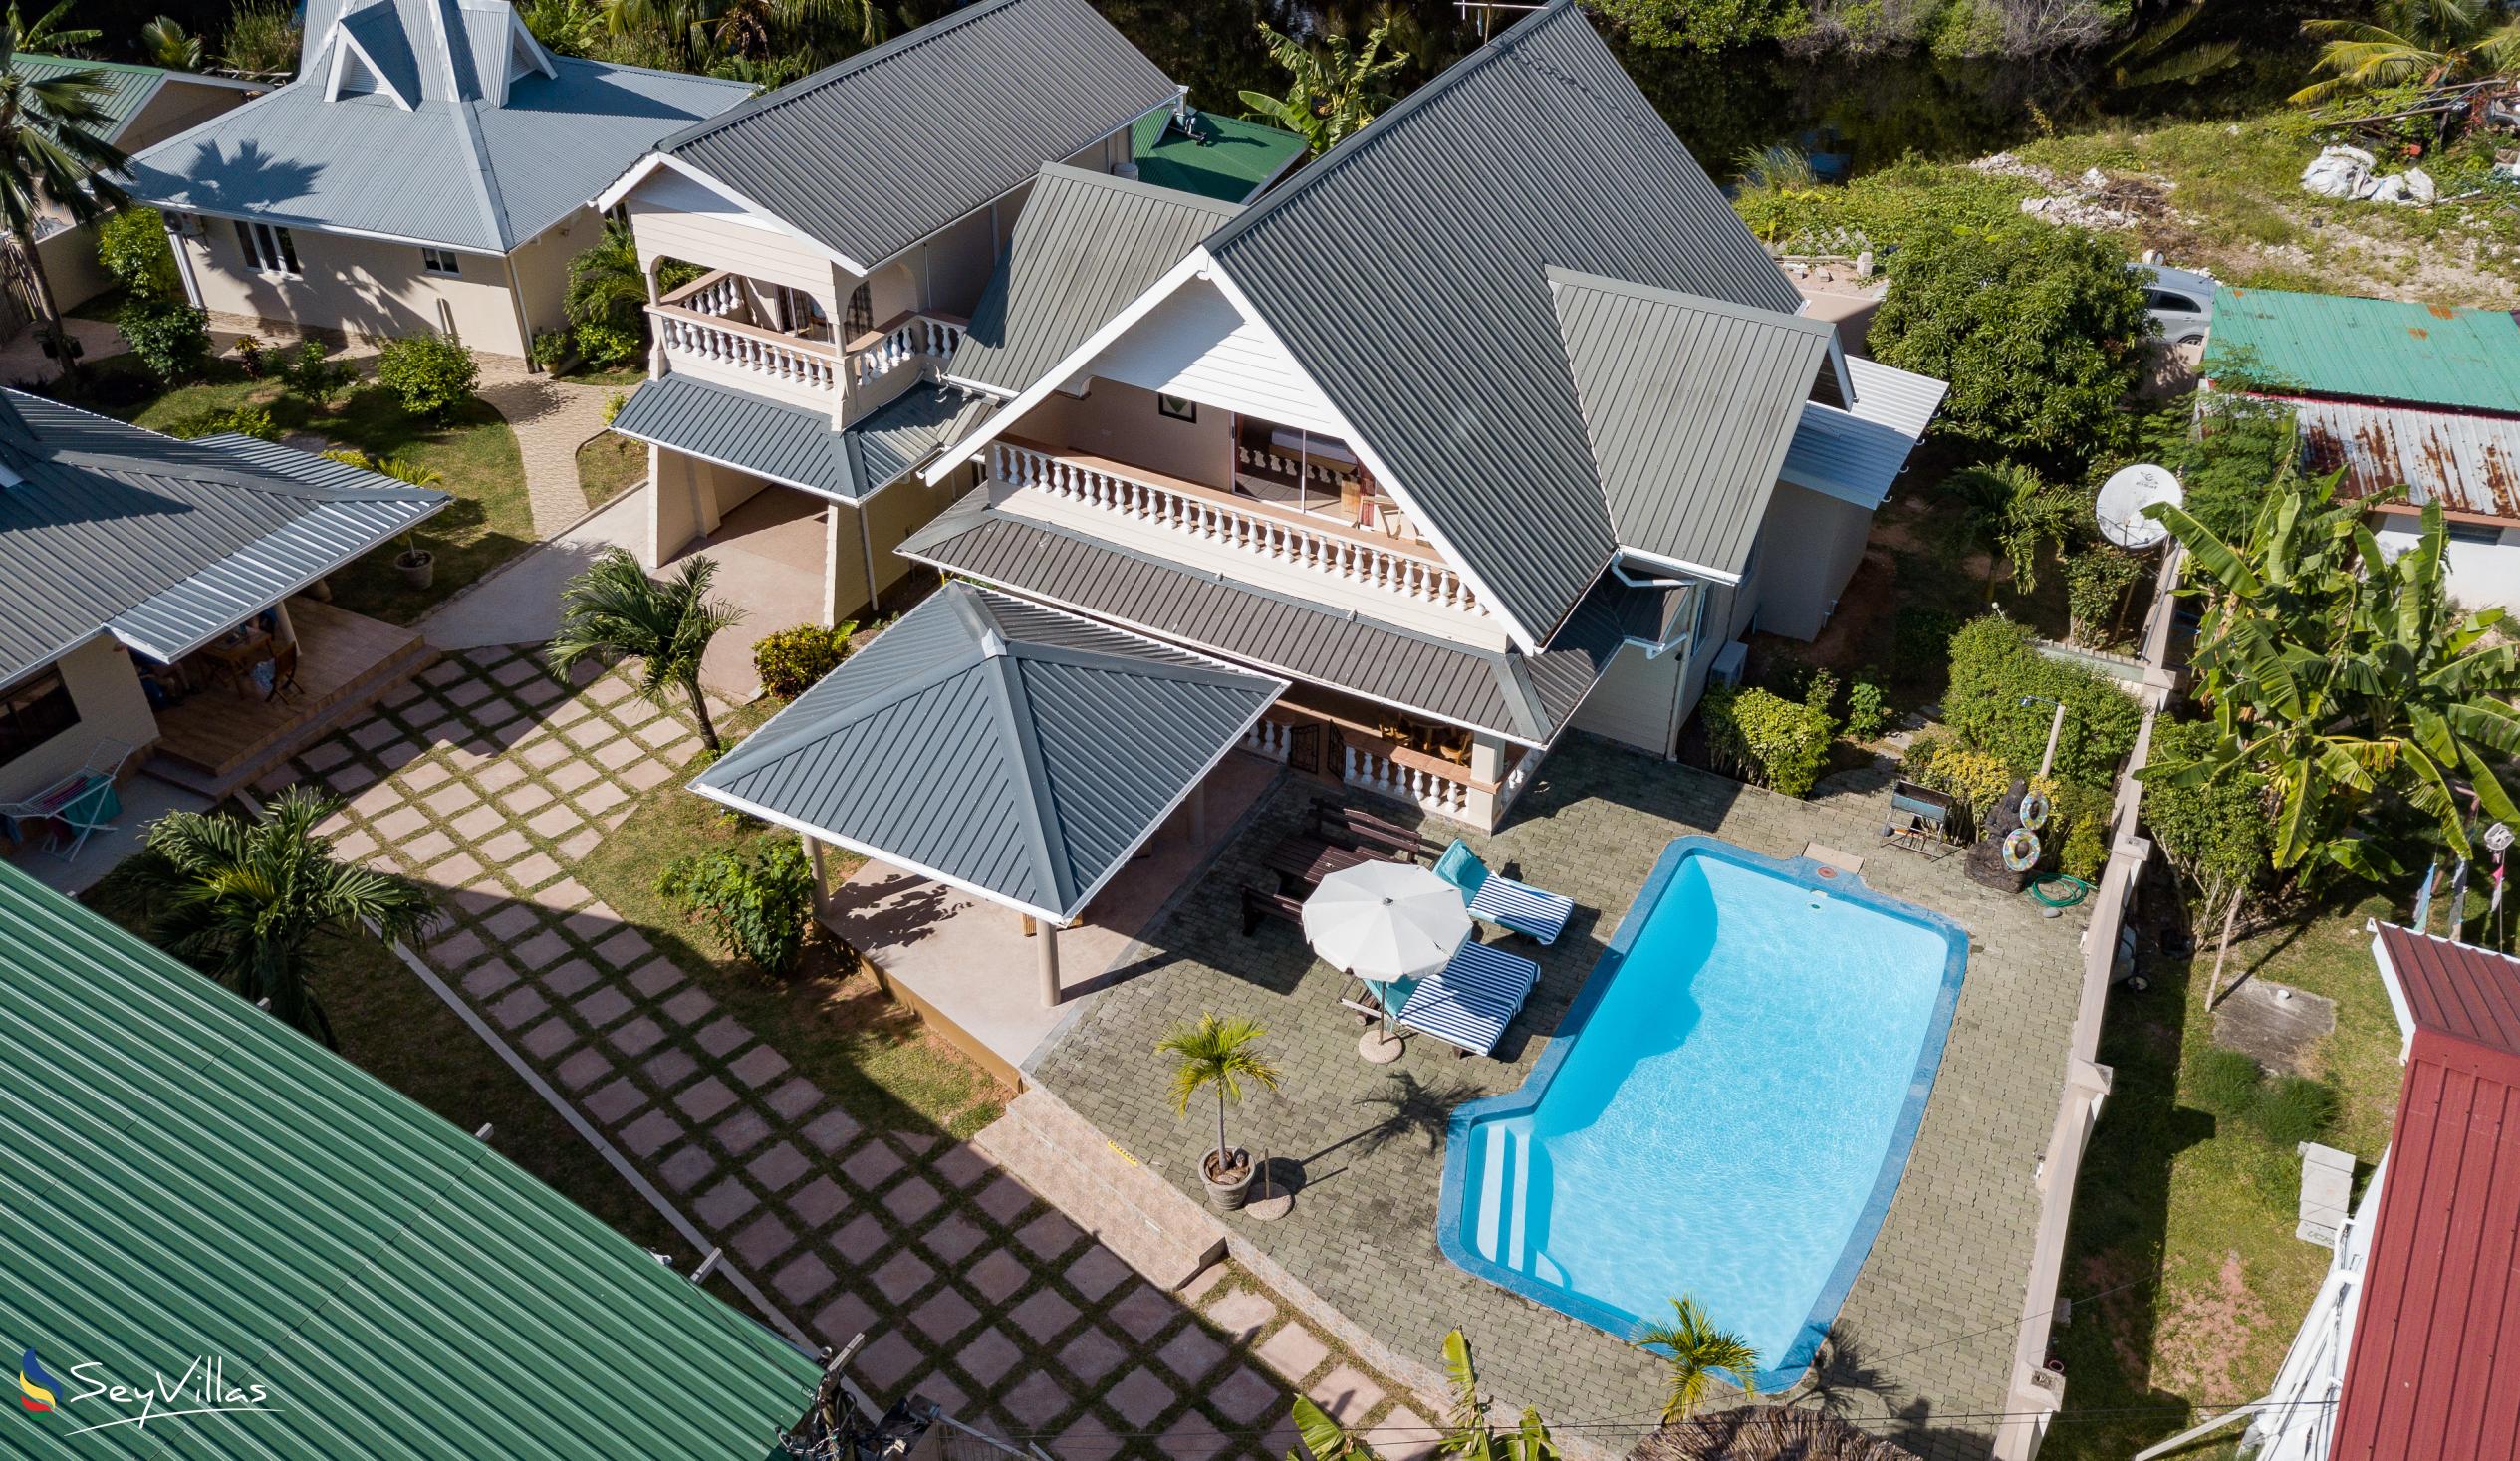 Foto 2: Villa Aya - Aussenbereich - Praslin (Seychellen)